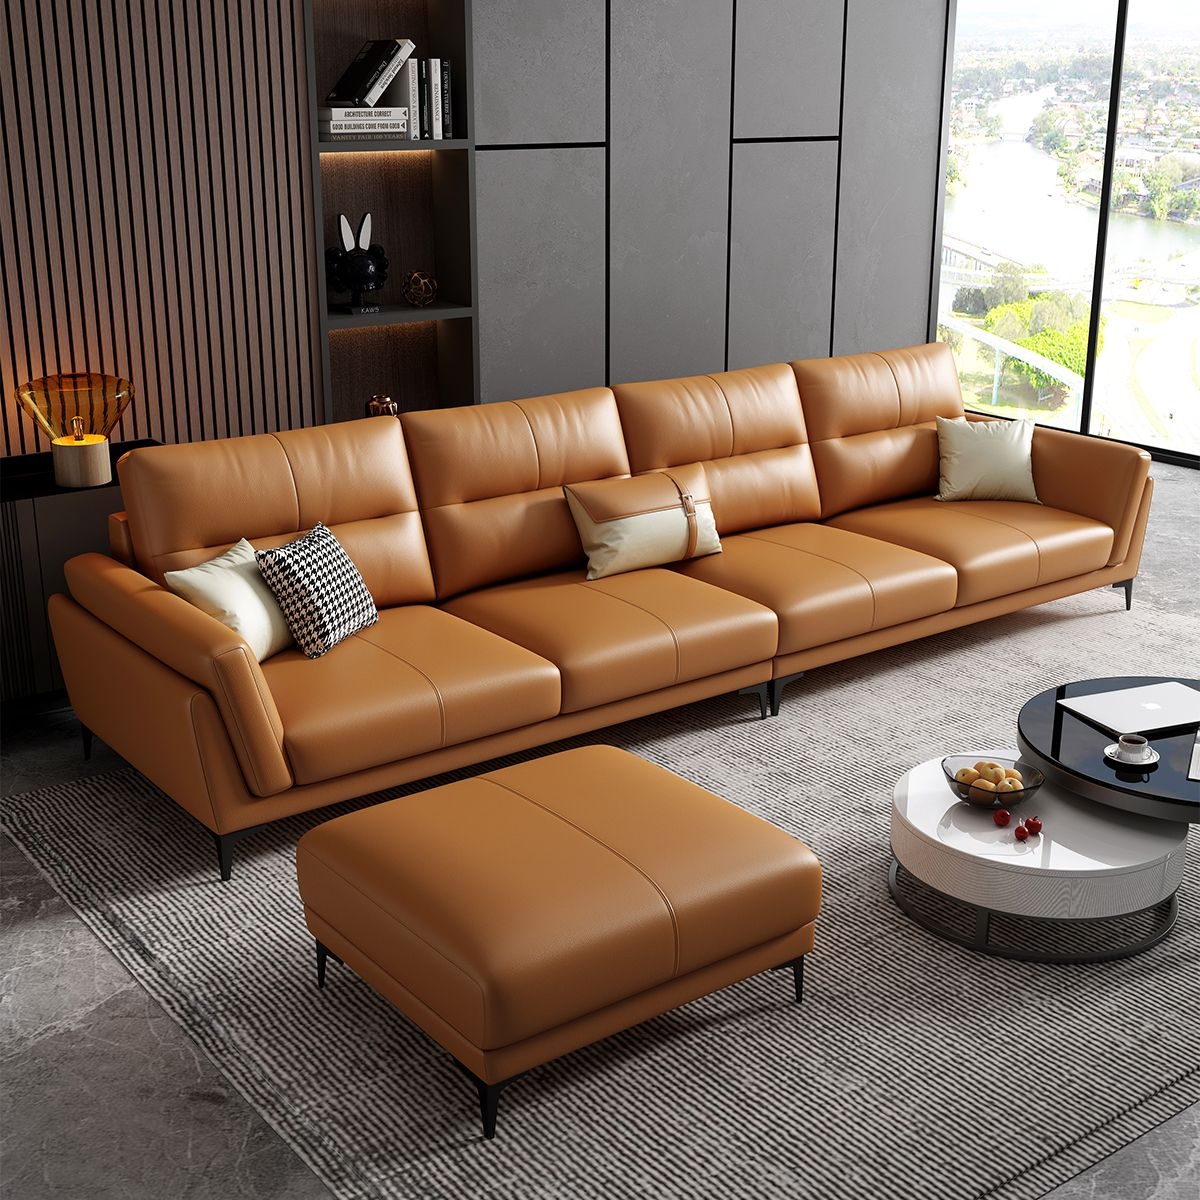 棕色沙发最佳搭配颜色图片